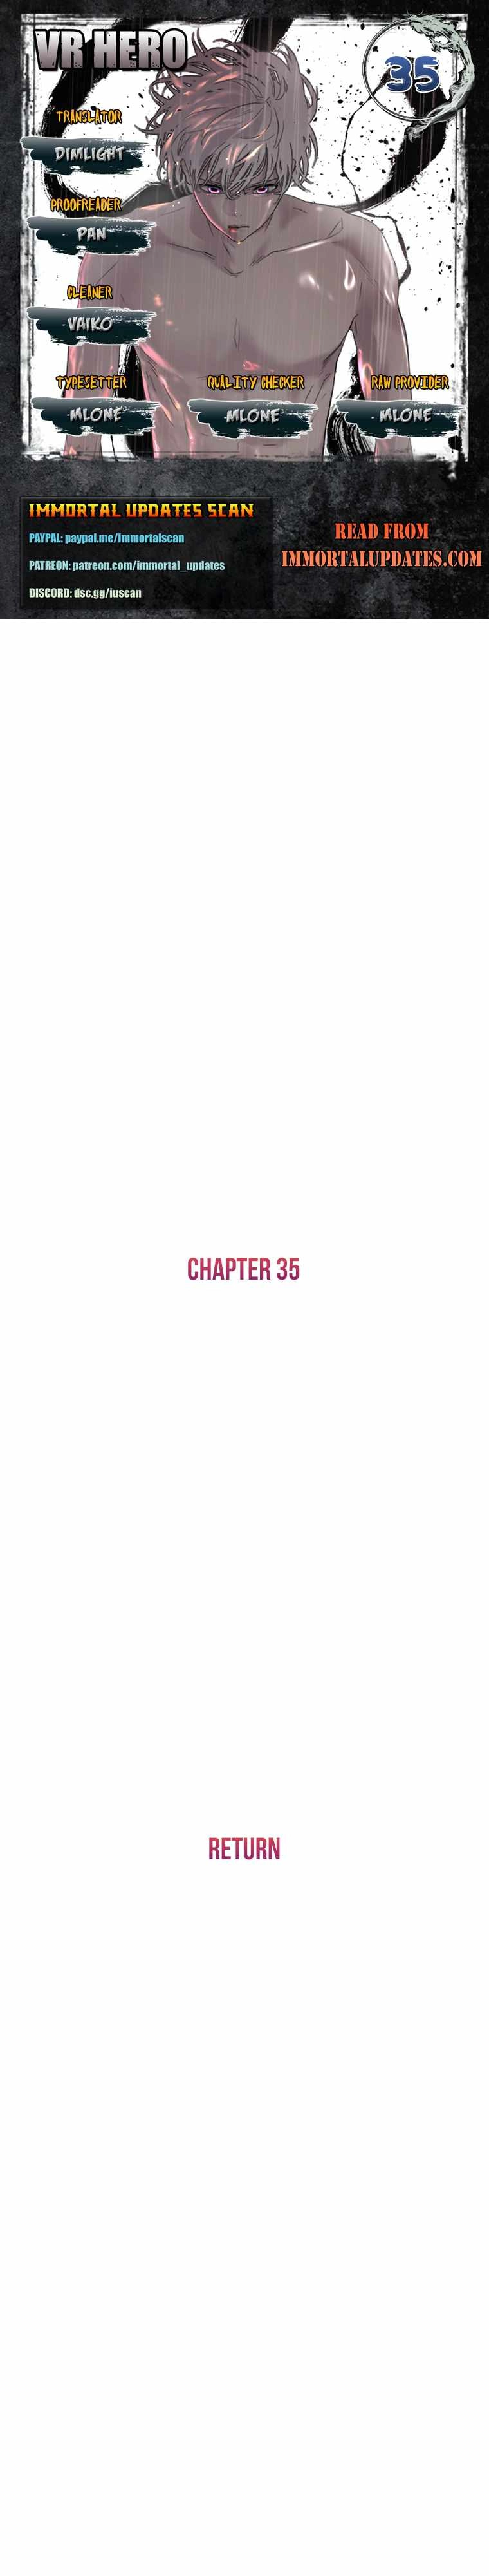 VR HERO Chapter 35